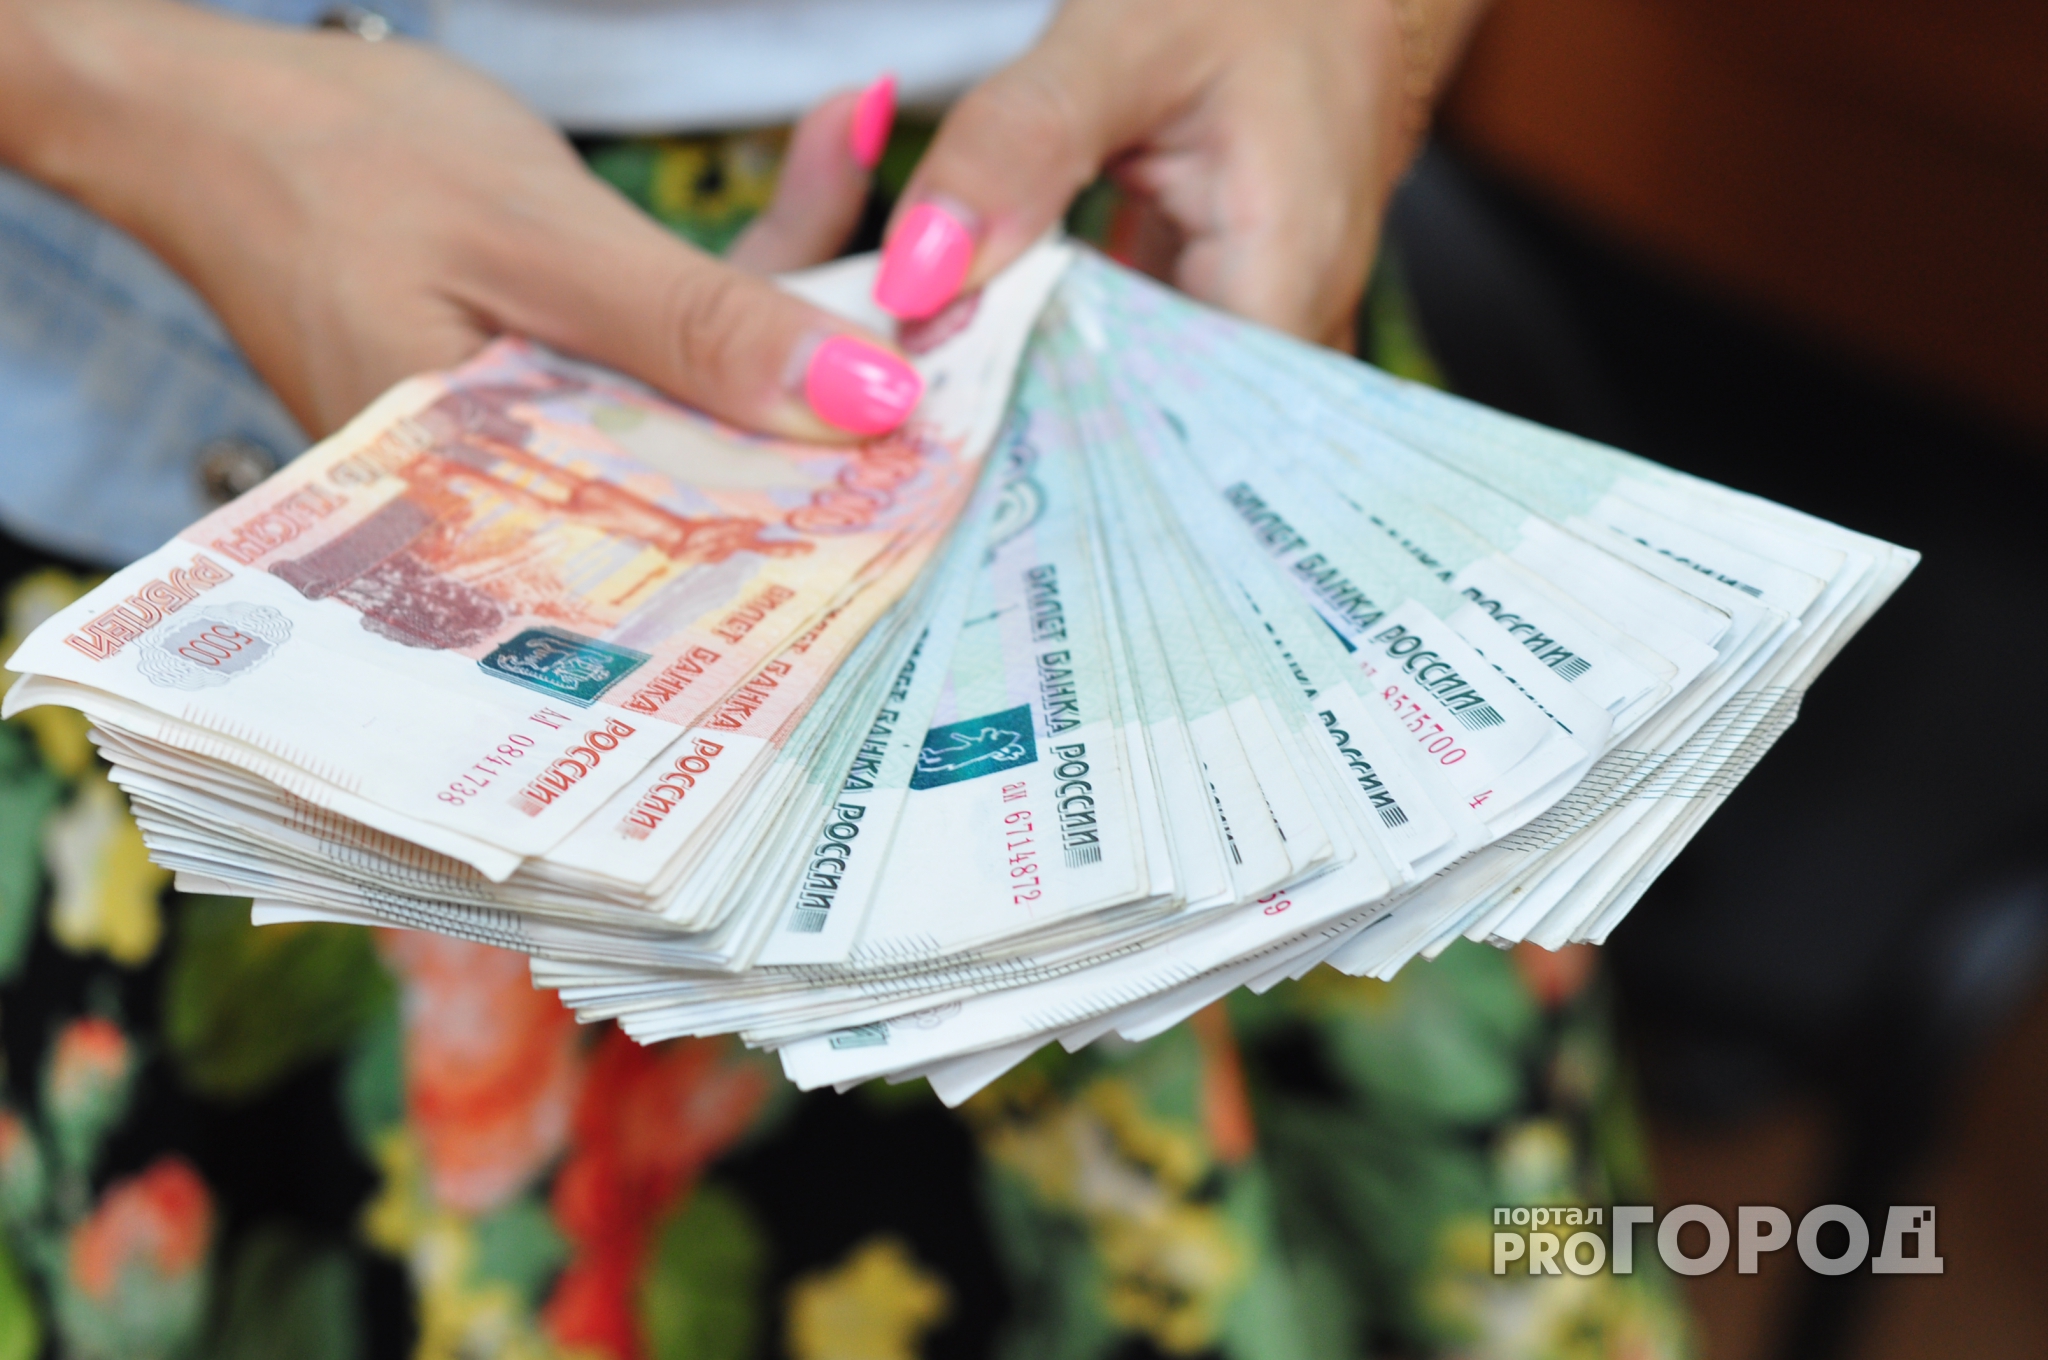 В Чувашии сотрудница банка сняла со счета клиента более 300 тысяч рублей